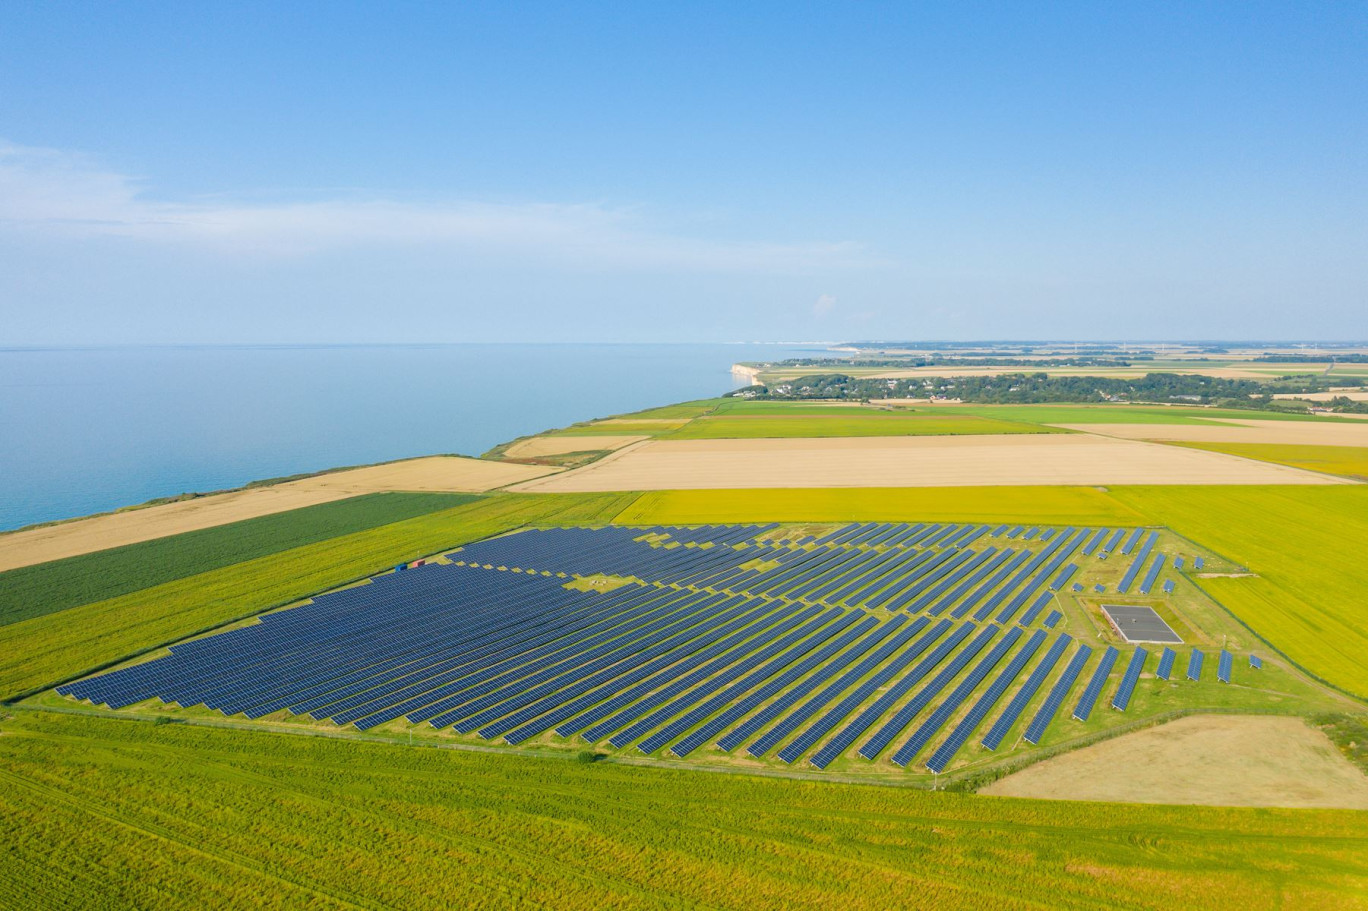 Le projet de loi prévoit de décarboner l’industrie existante et de développer plusieurs technologies vertes sélectionnées, comme le photovoltaïque. © Florent